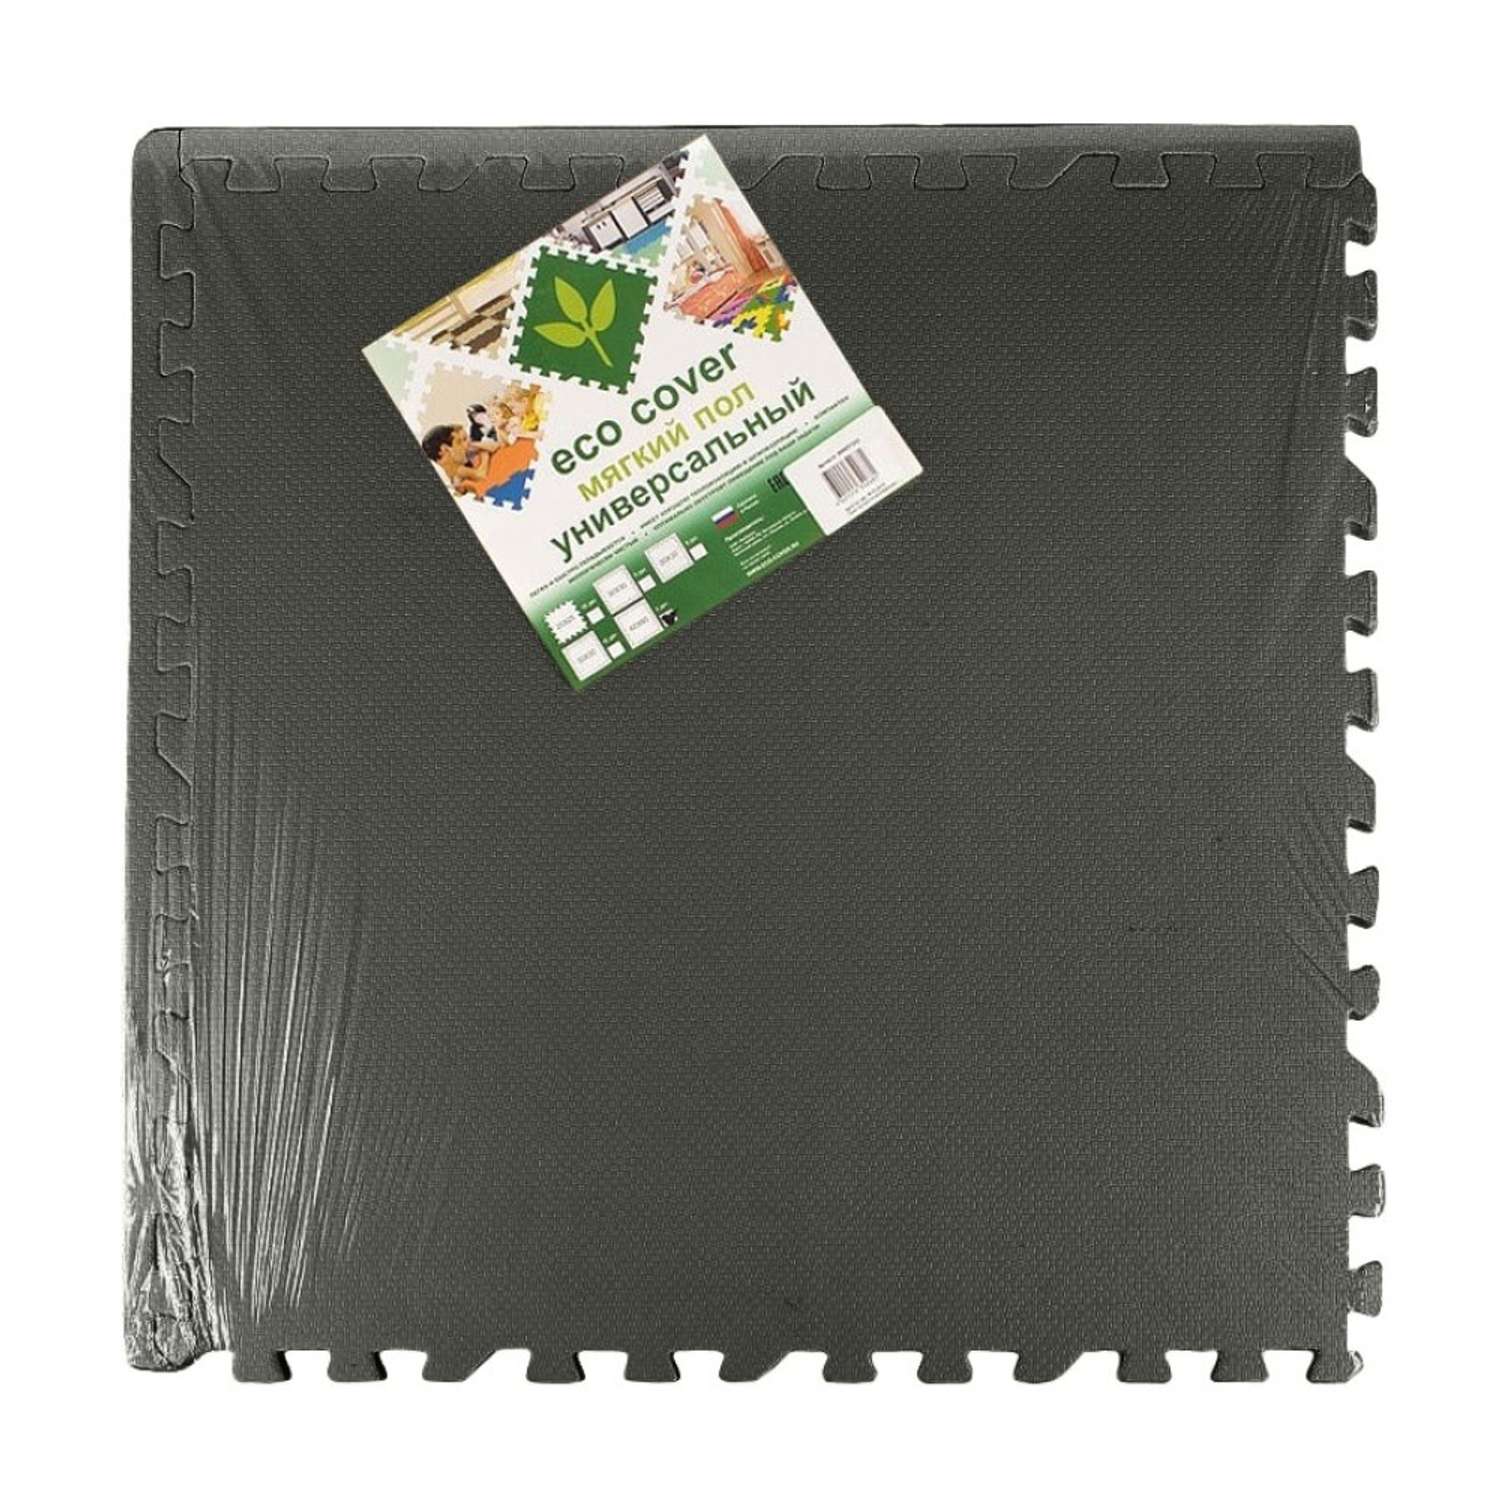 Развивающий детский коврик Eco cover игровой мягкий пол для ползания черный 60х60 - фото 2